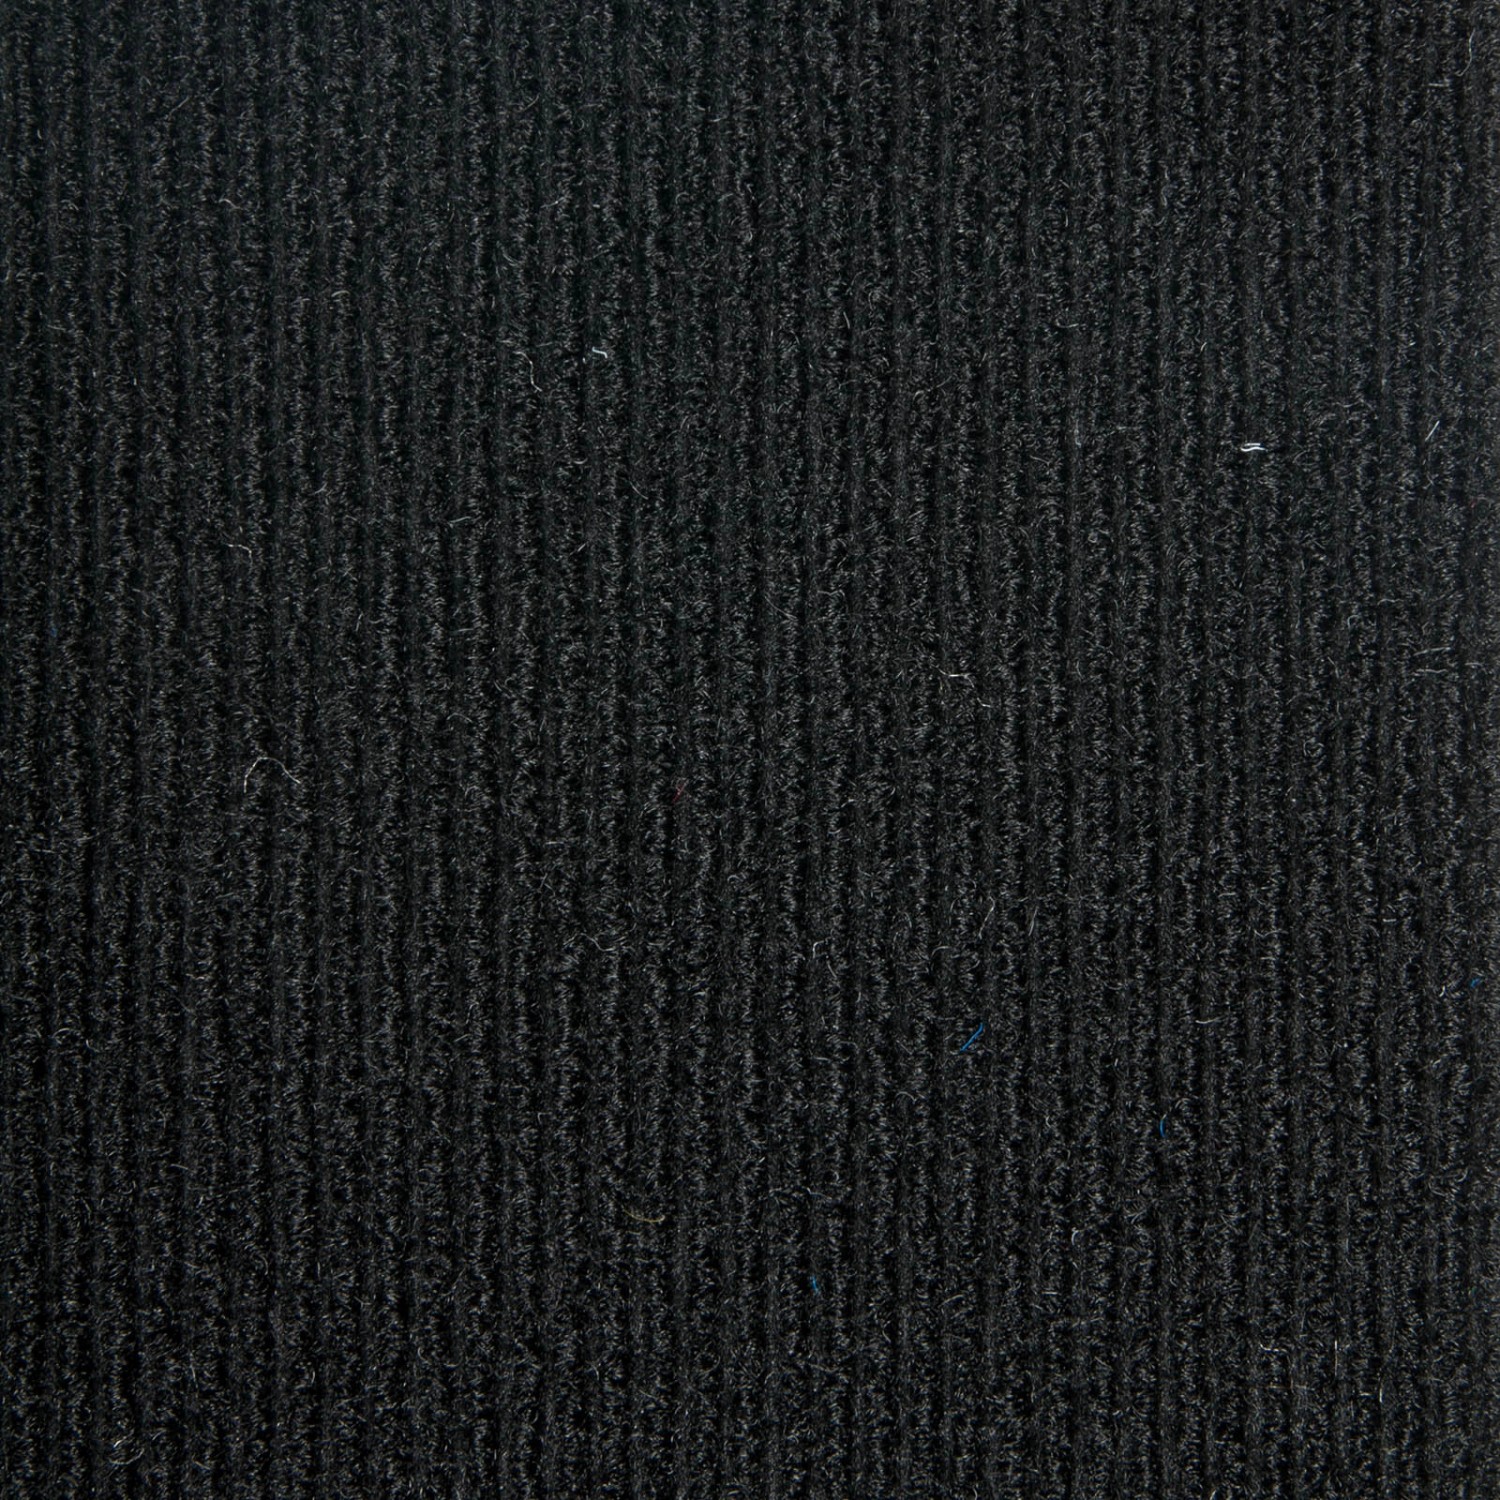 Schatex Teppichfliesen Schwarz Für Gewerbe Und Büro Nadelvlies Teppich Fliesen Selbstliegend Schatex Teppichbodenfliesen